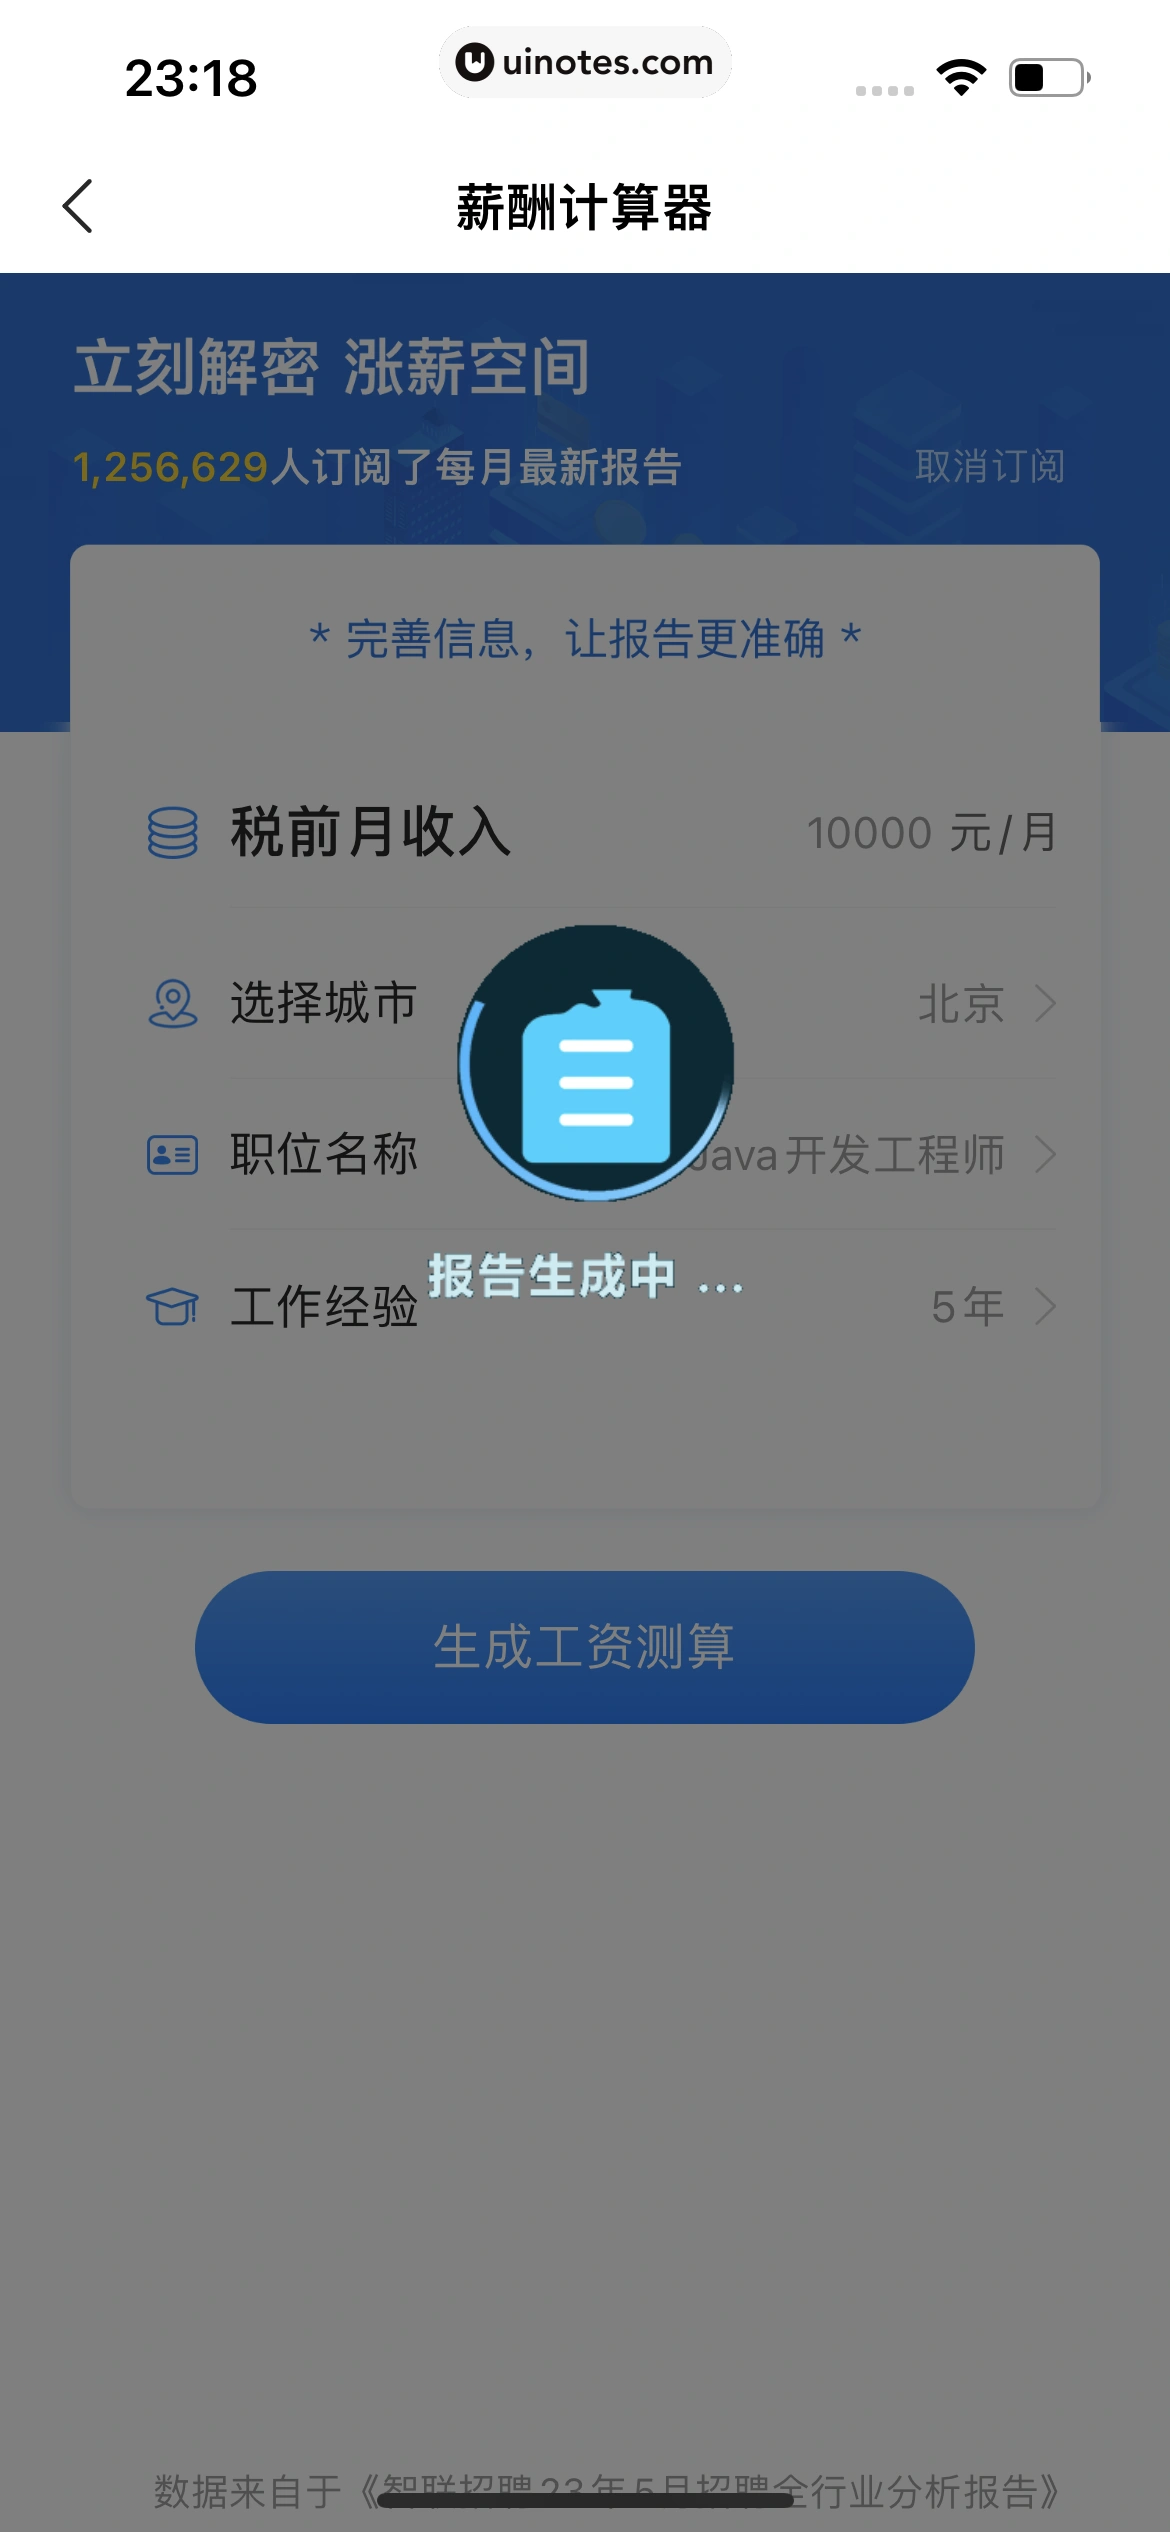 智联招聘 App 截图 555 - UI Notes